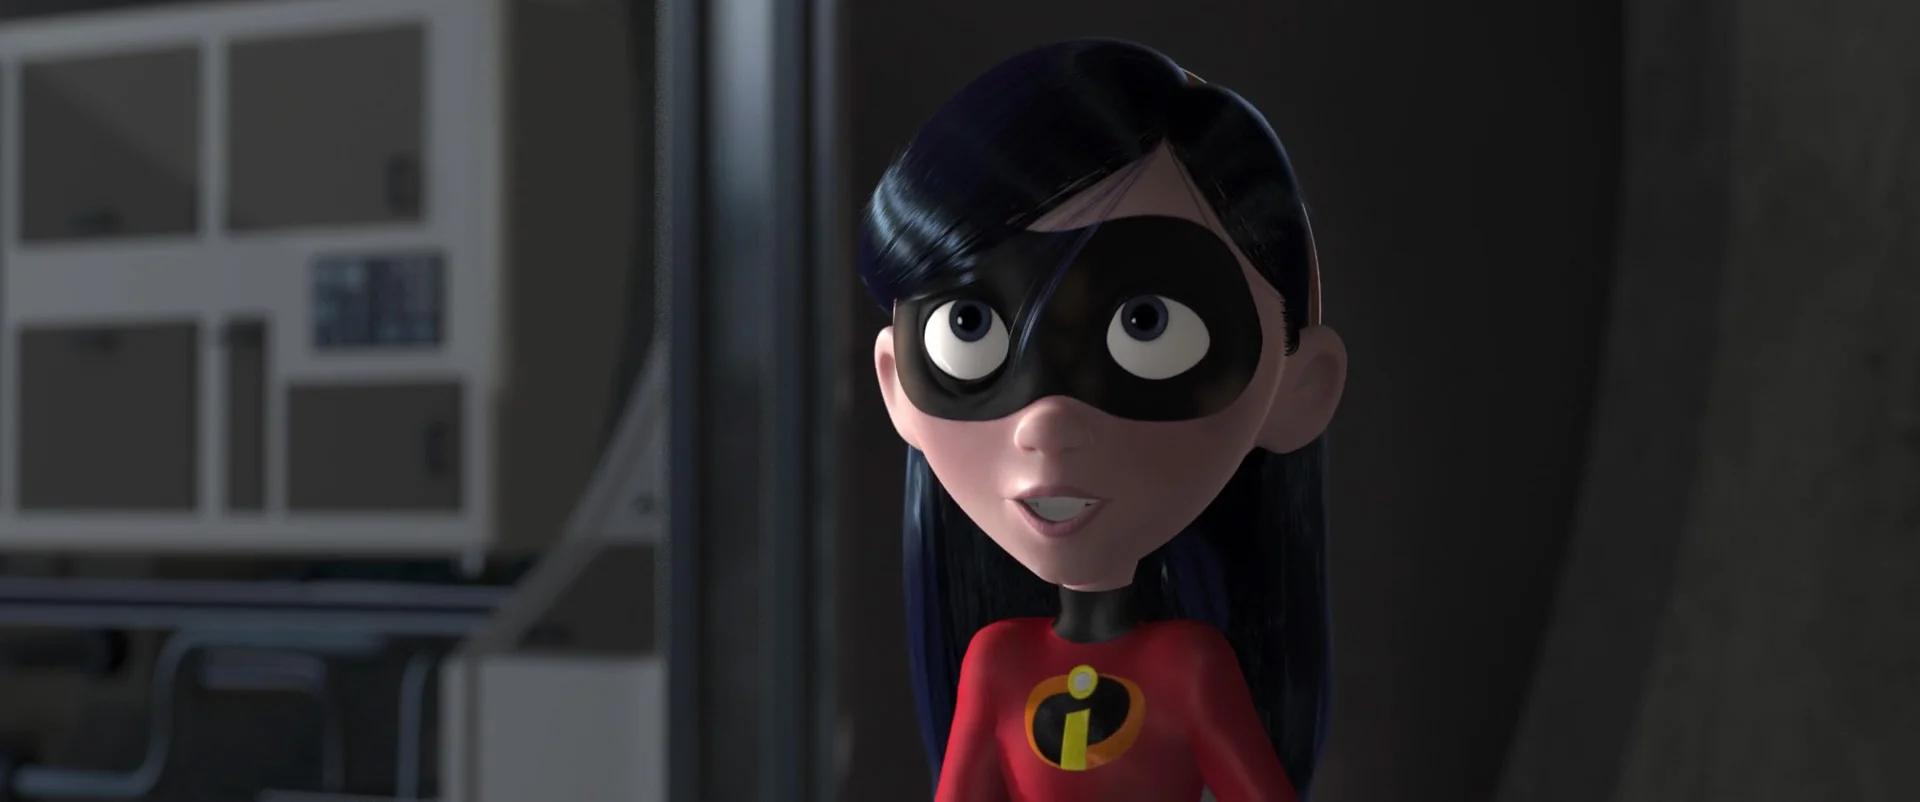 Personnage animé en 3D représentant une jeune fille aux grands yeux, vêtue d'un costume de super-héros rouge des Indestructibles, avec un masque noir et des cheveux noirs coupés au carré, debout dans ce qui semble être